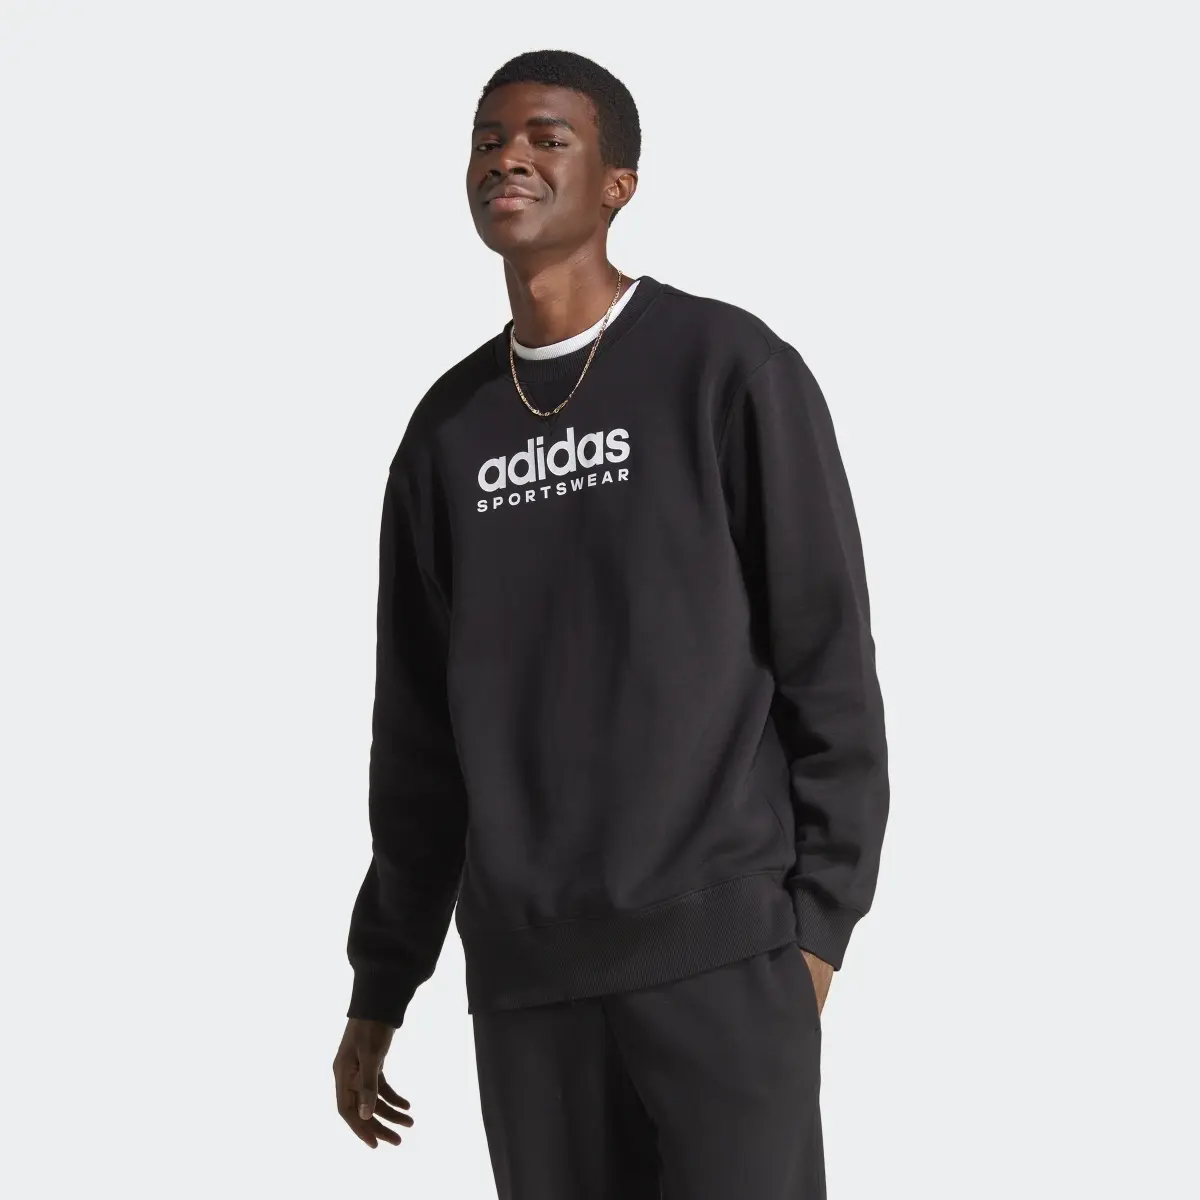 Adidas All SZN Fleece Graphic Sweatshirt. 2